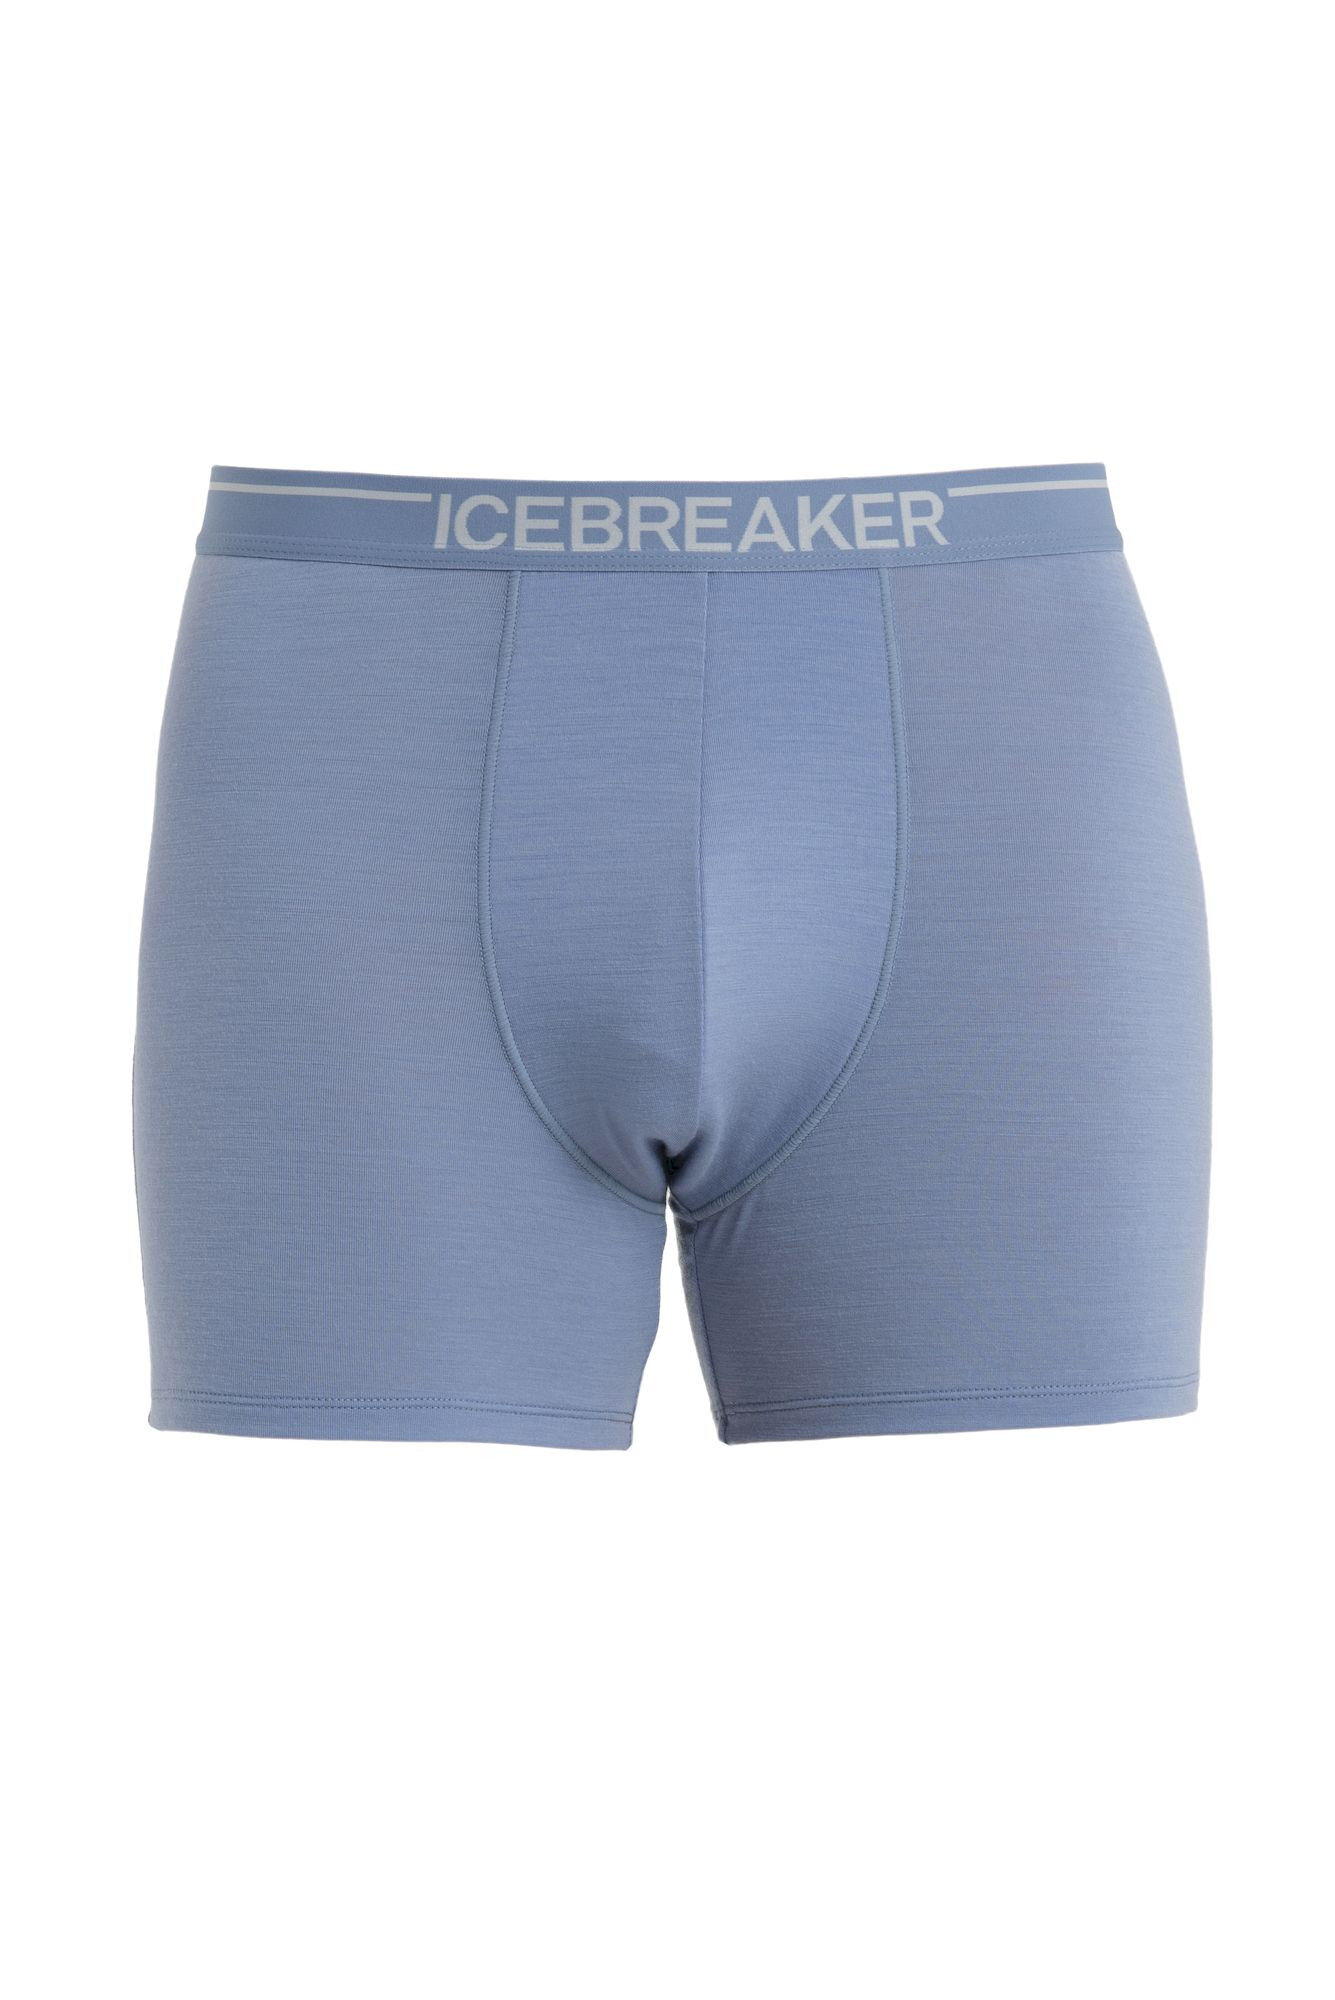 Icebreaker - Anatomica Boxers - Mutande da uomo